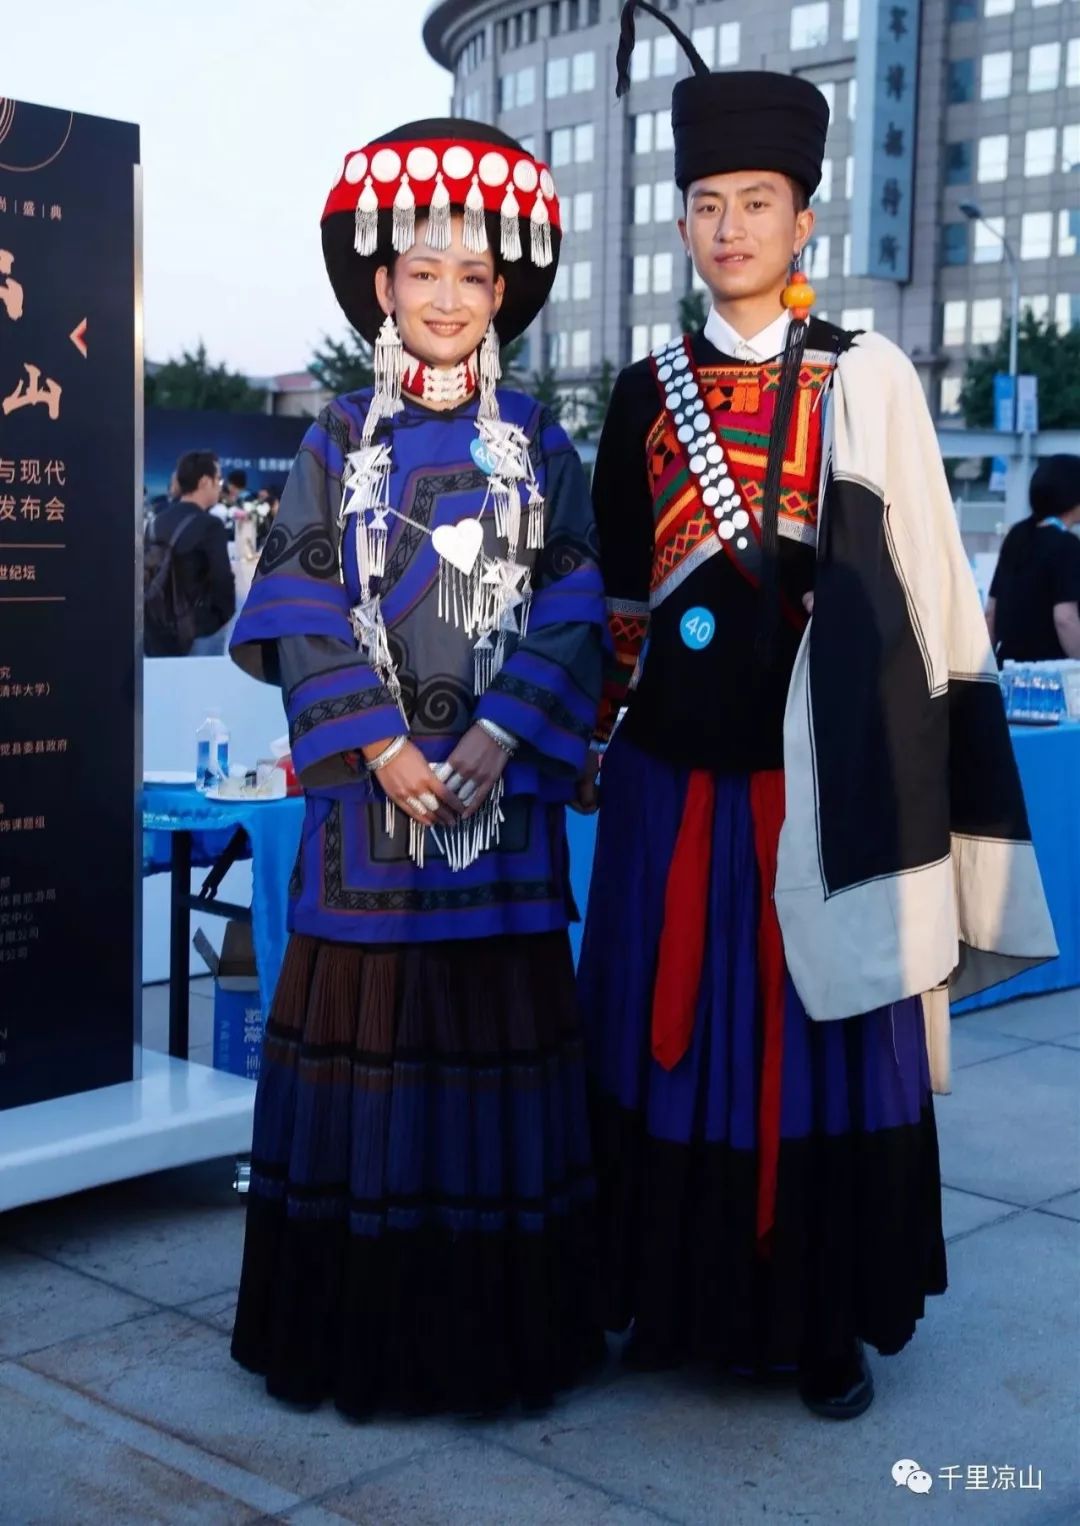 民族文化||刚刚,凉山这个县把彝族服饰文化带上了国际